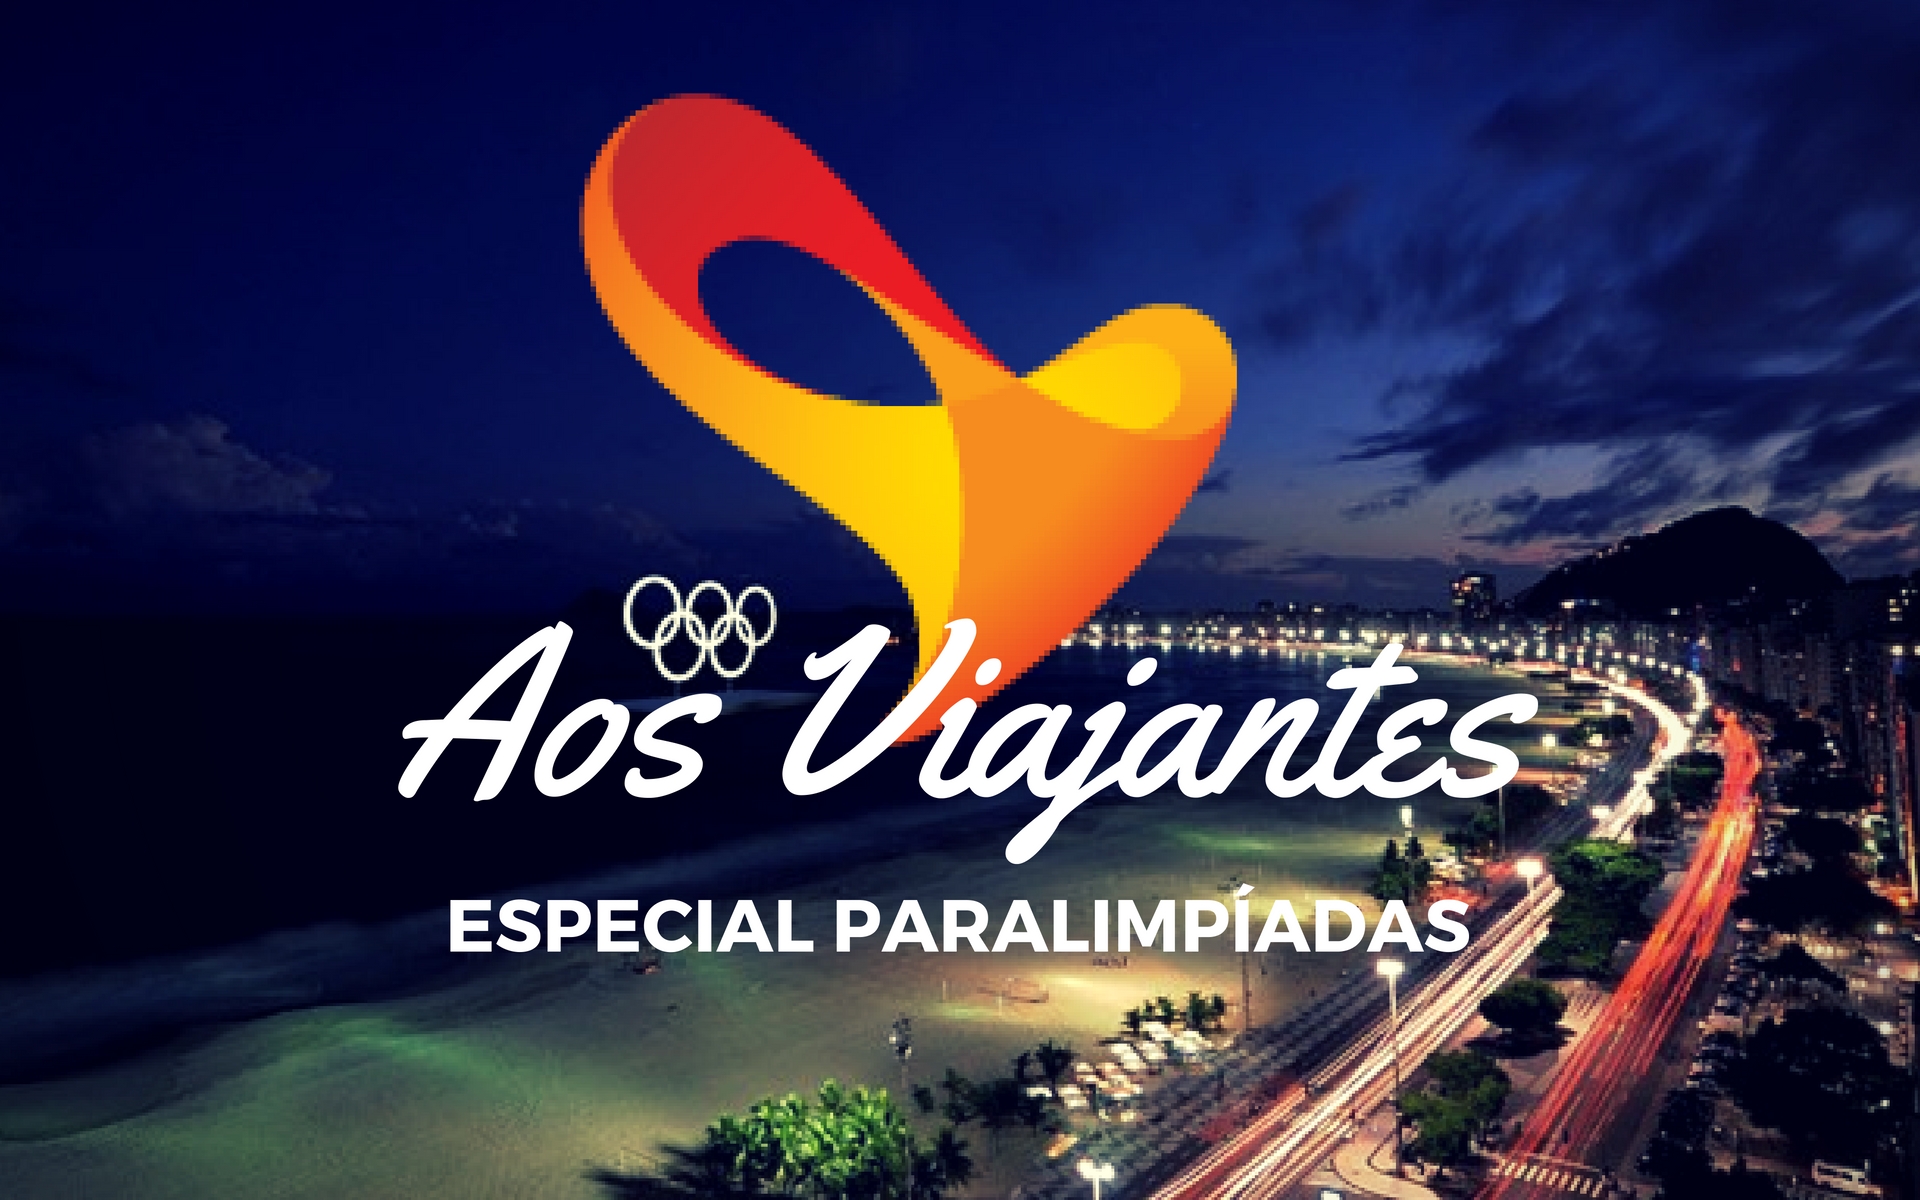 Boulevard-Olímpicos-e-atrações-paralimpiadas Boulevard Olímpico e Casas dos Países nas Paralimpíadas (Última chance!) 